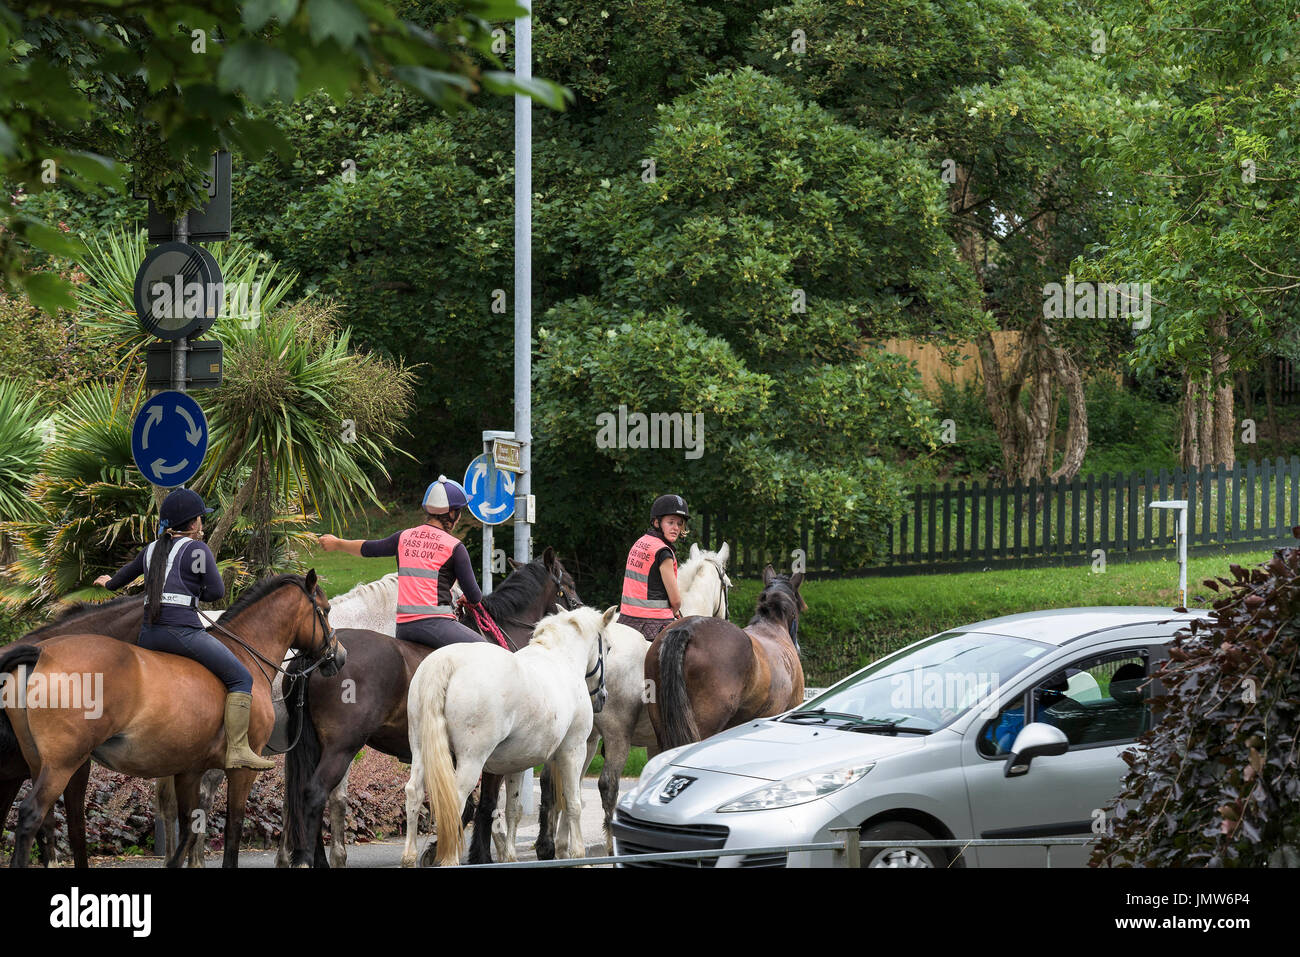 Cavalieri a cavallo su strade pubbliche. Foto Stock